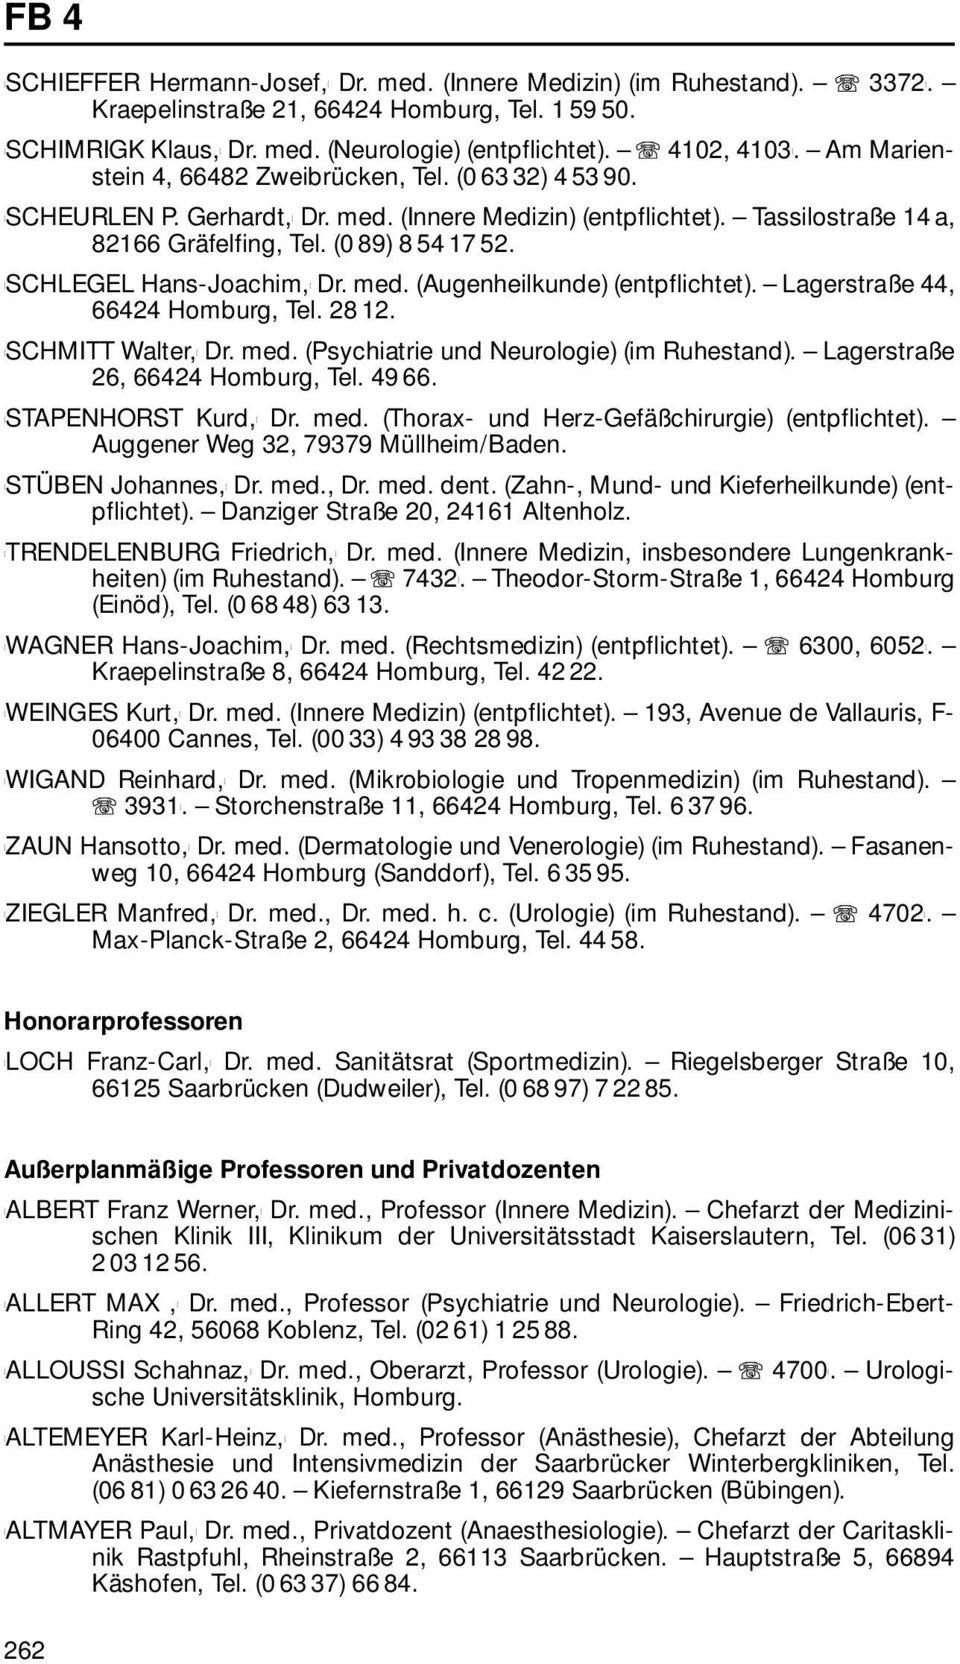 SCHLEGEL Hans-Joachim, Dr. med. (Augenheilkunde) (entpflichtet). Lagerstraße 44, 66424 Homburg, Tel. 28 12. SCHMITT Walter, Dr. med. (Psychiatrie und Neurologie) (im Ruhestand).